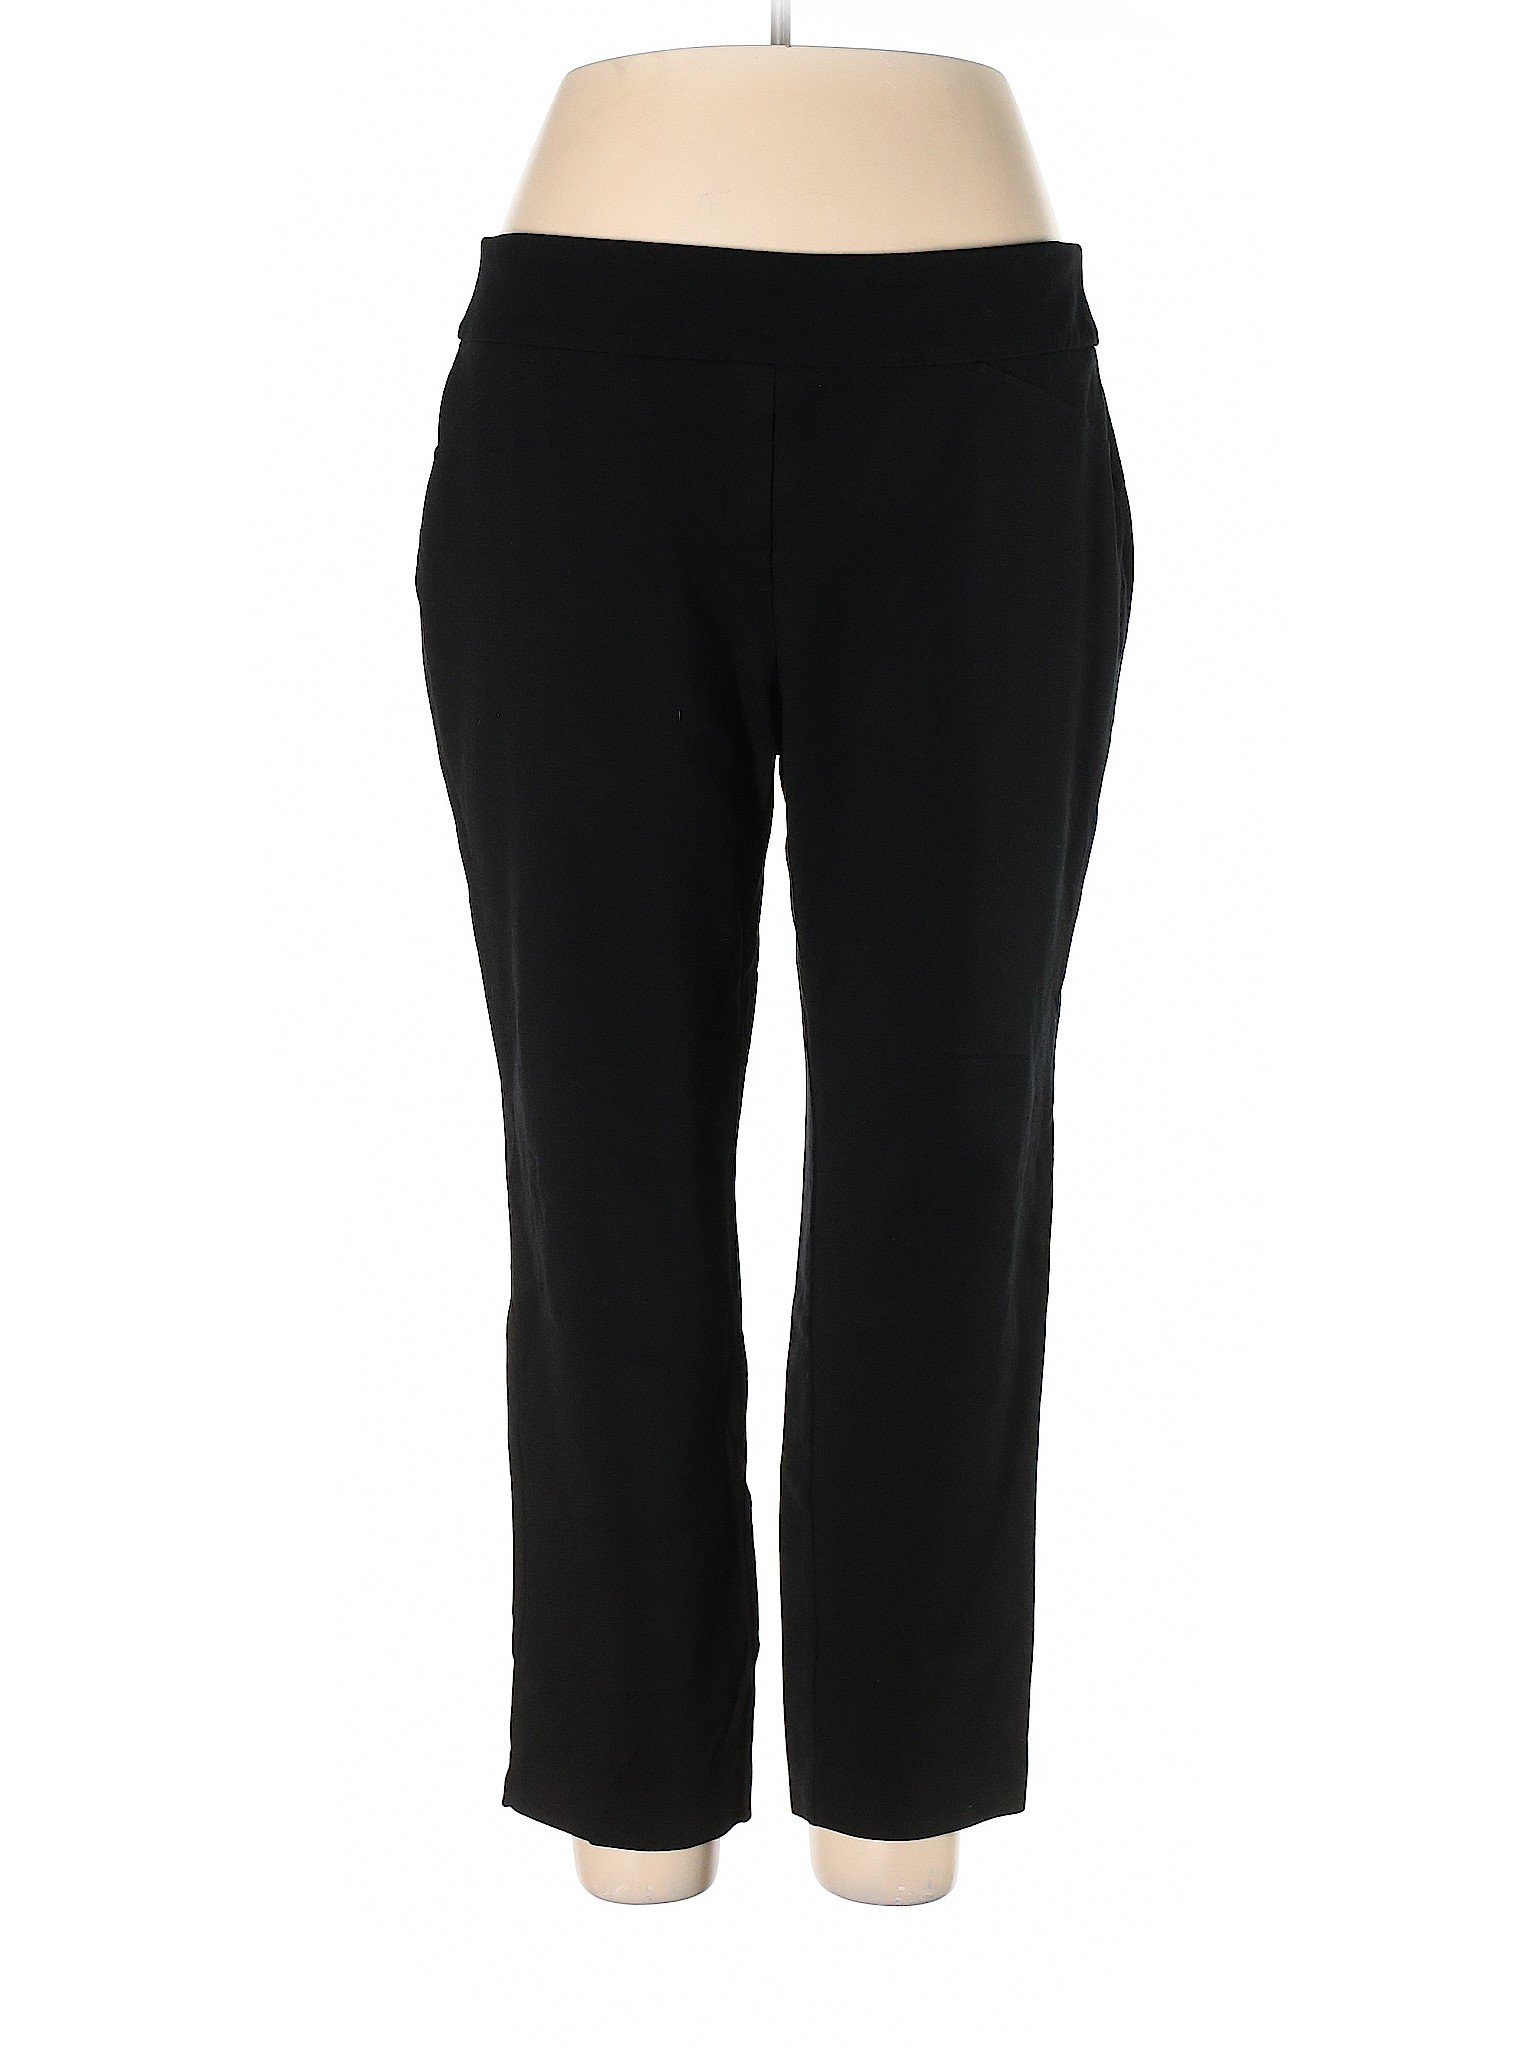 Charter Club Women Black Dress Pants 18 Plus | eBay